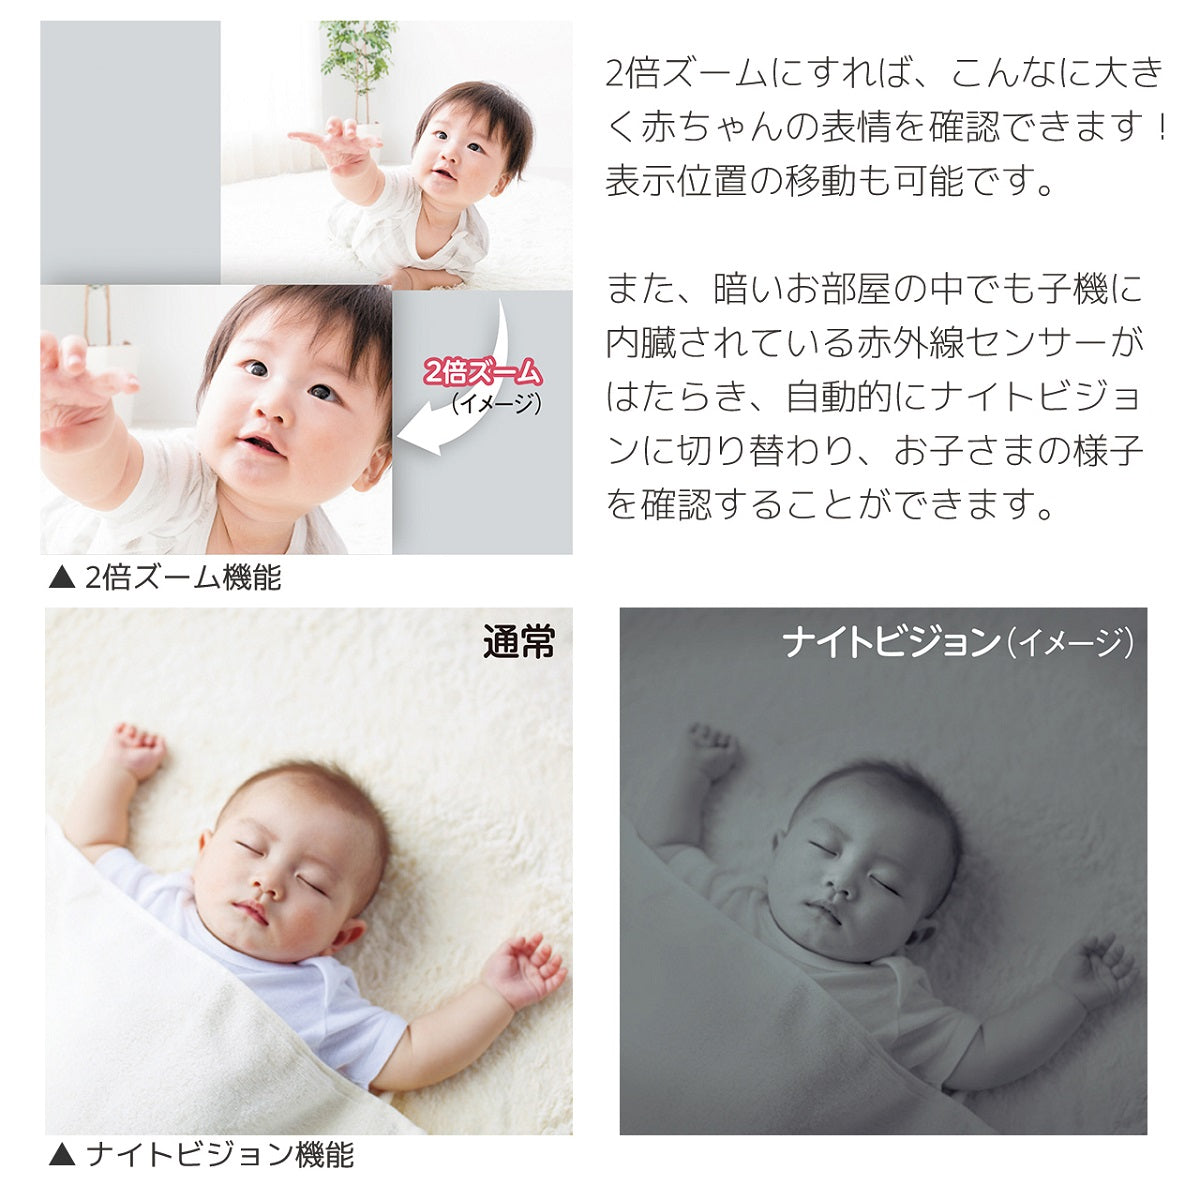 日本育児 デジタルカラー スマートビデオモニター3 【ベビー用品 ベビーモニターレンタル】27-43-1